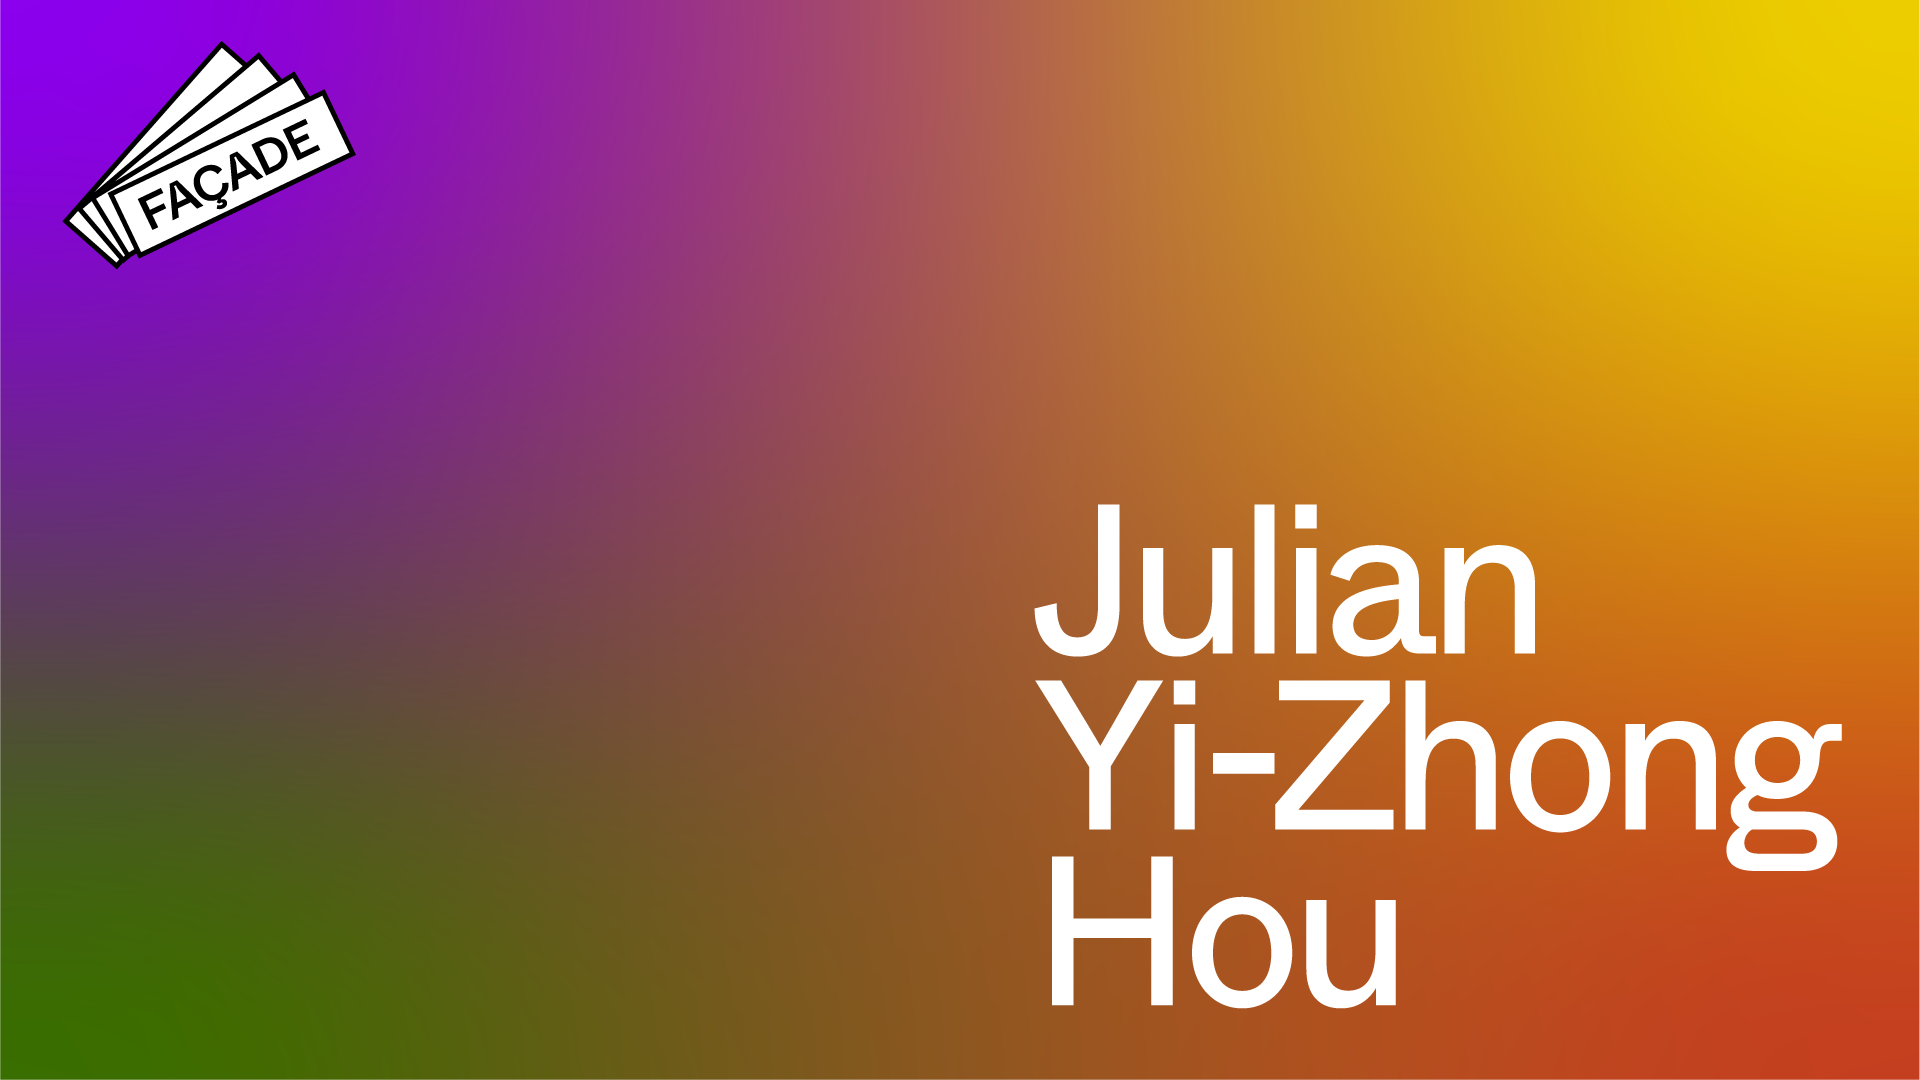 Facade – Julian Yi-Zhong Hou